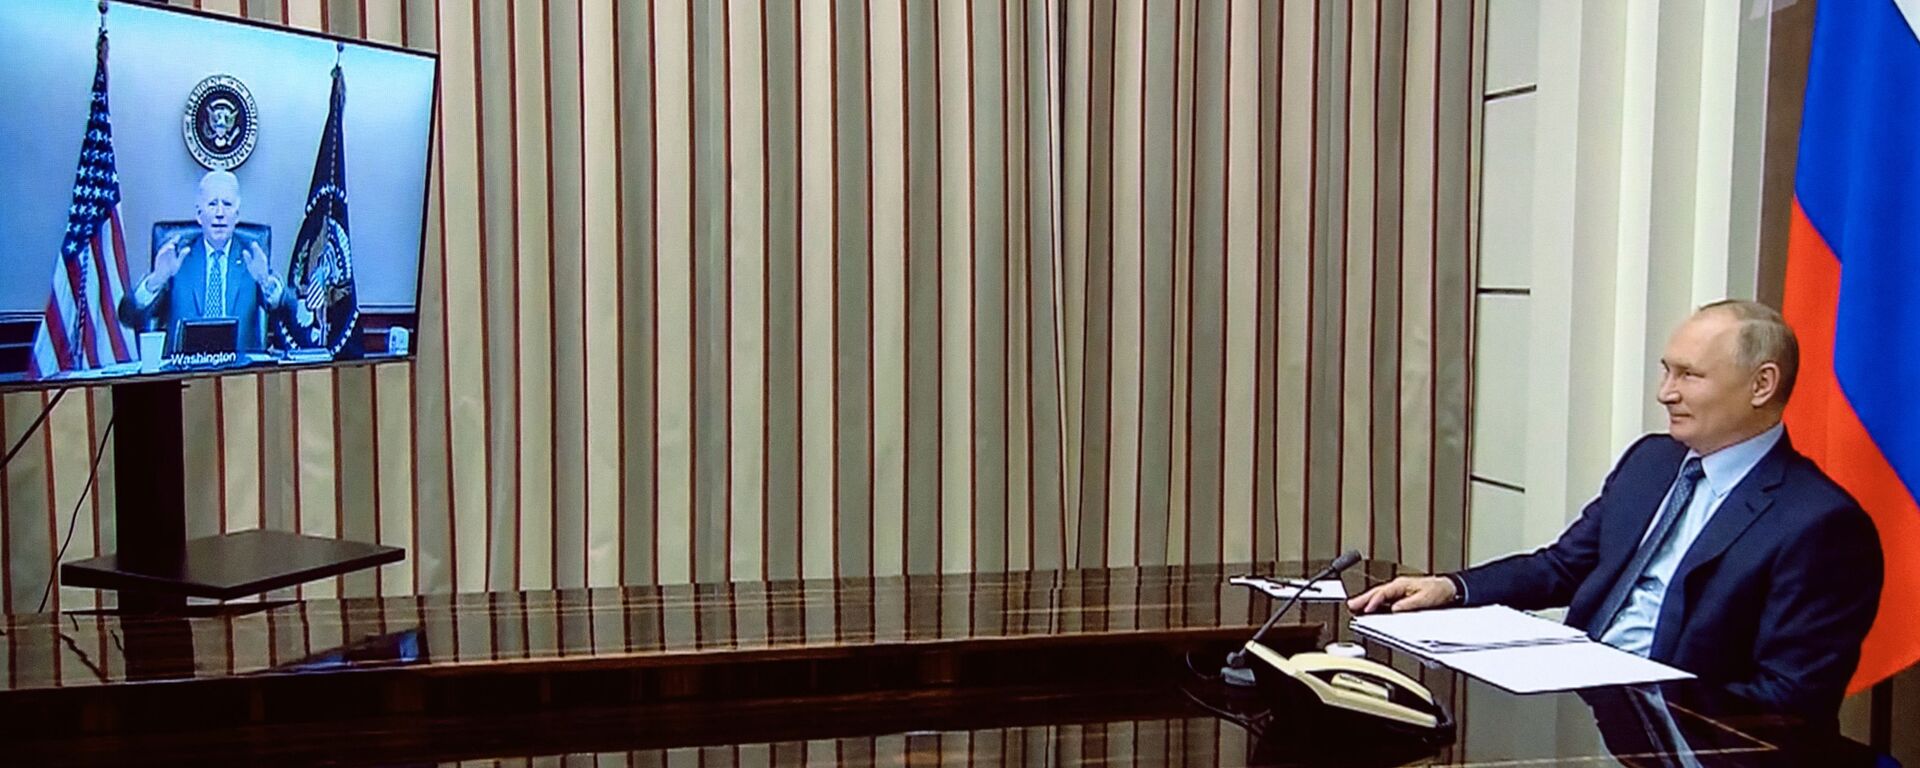 7 декабря 2021. Президент РФ Владимир Путин во время переговоров с президентом США Джозефом Байденом в режиме видеоконференции. - Sputnik Кыргызстан, 1920, 07.12.2021